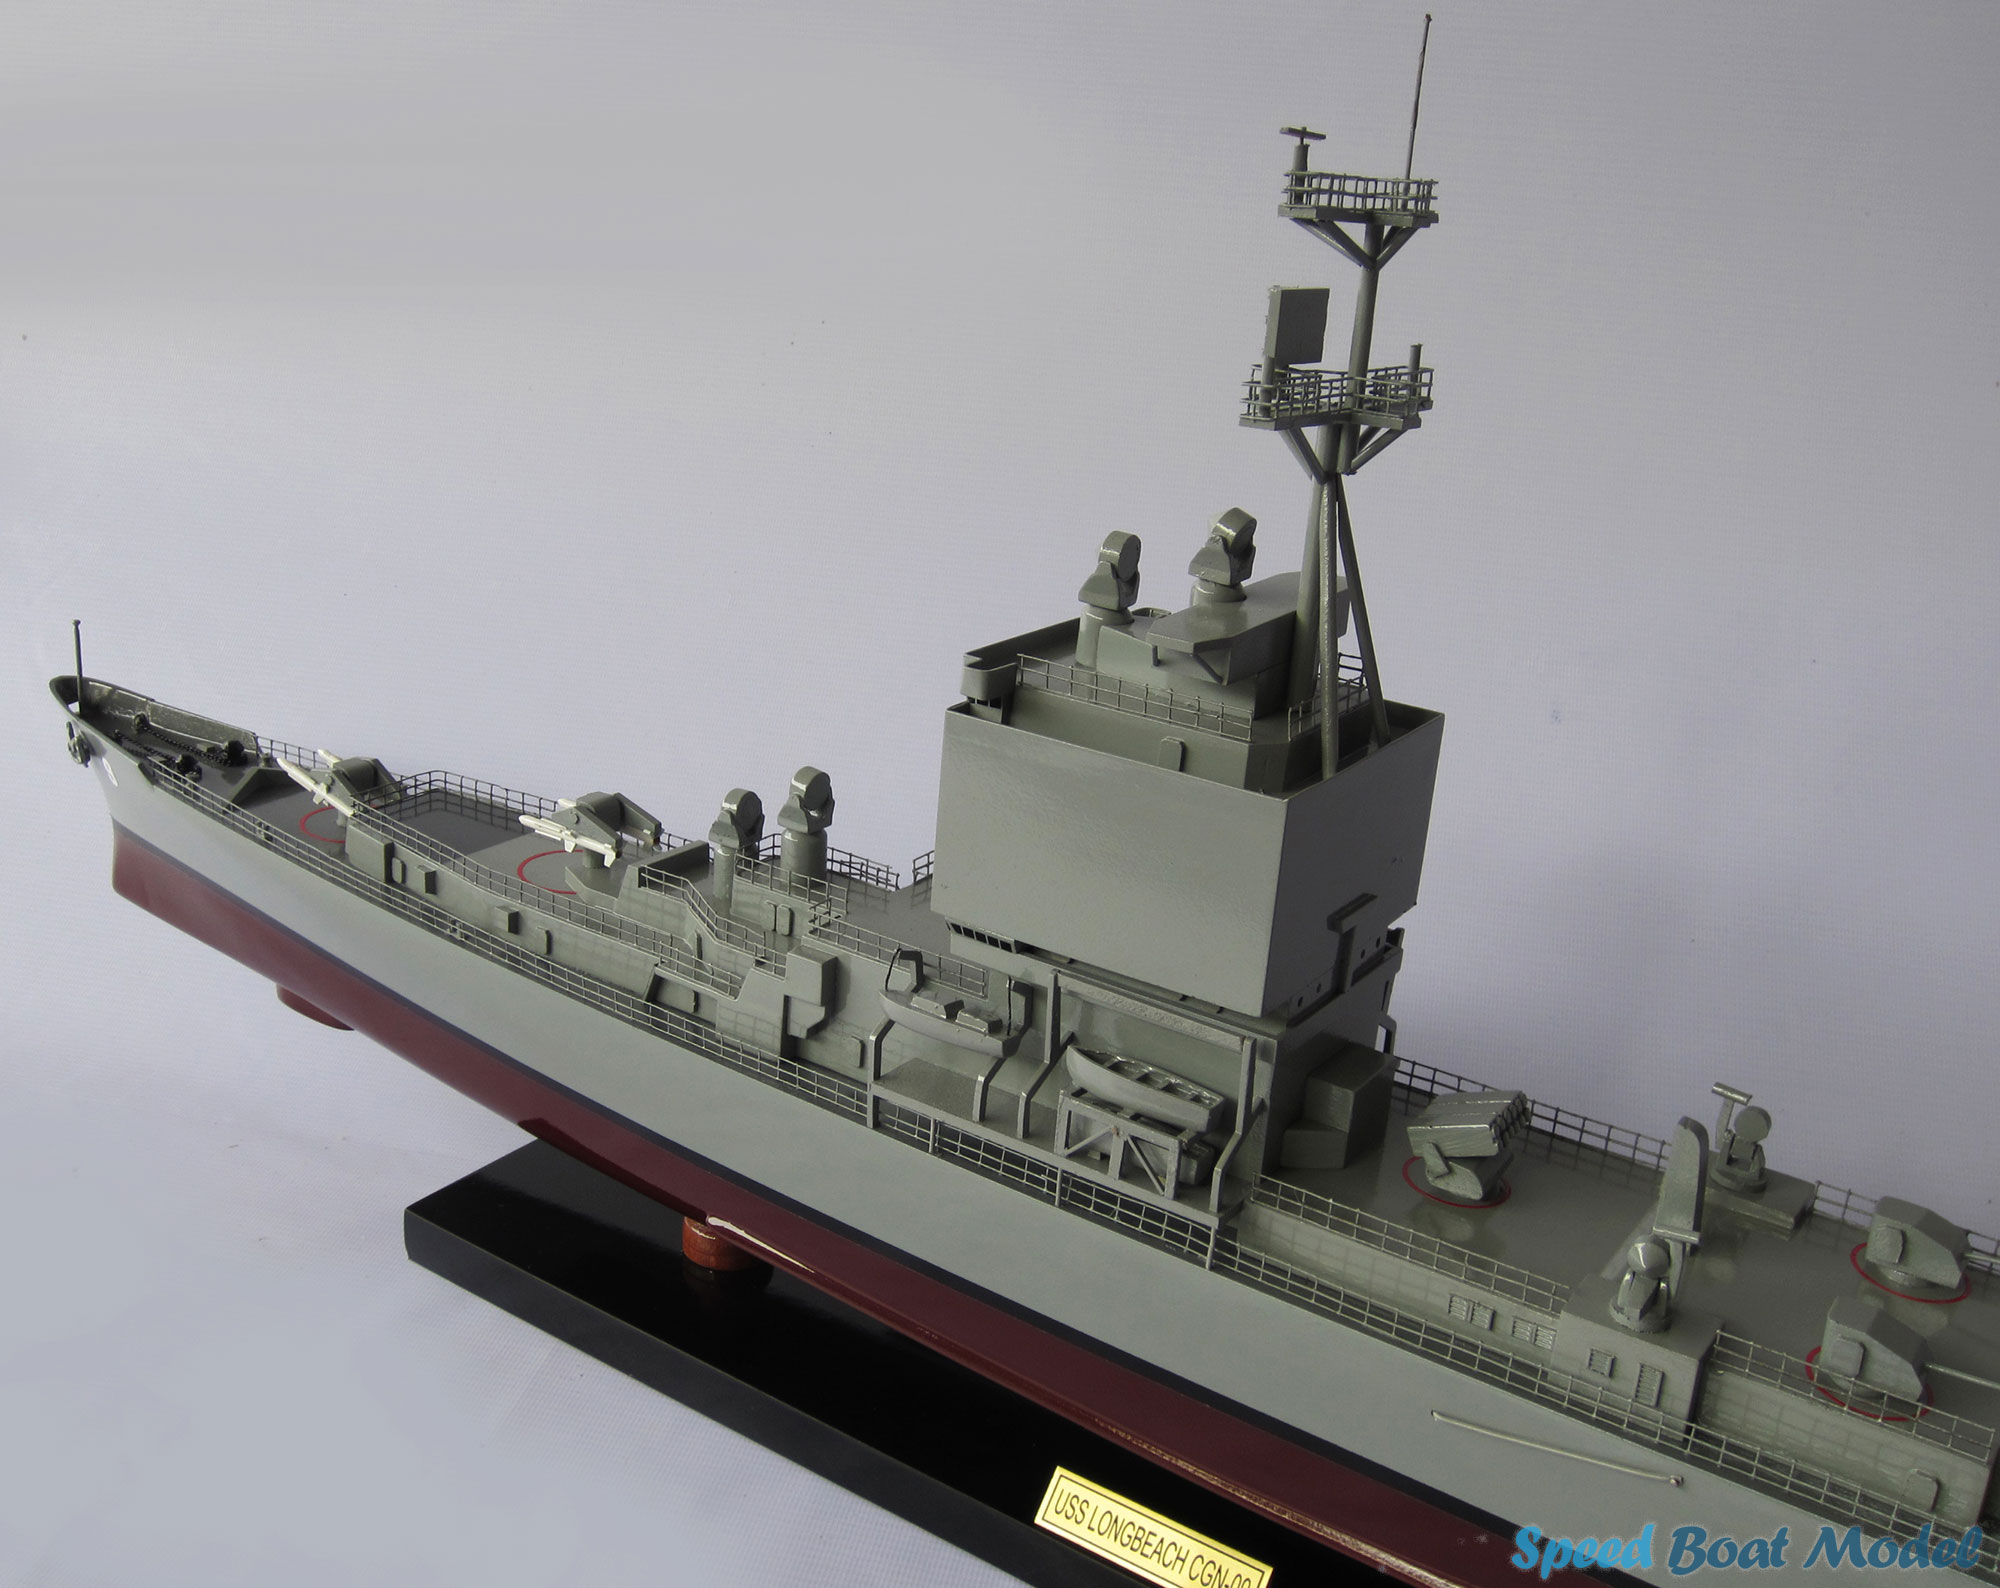 Uss Long Beach Warship Model 39.3"